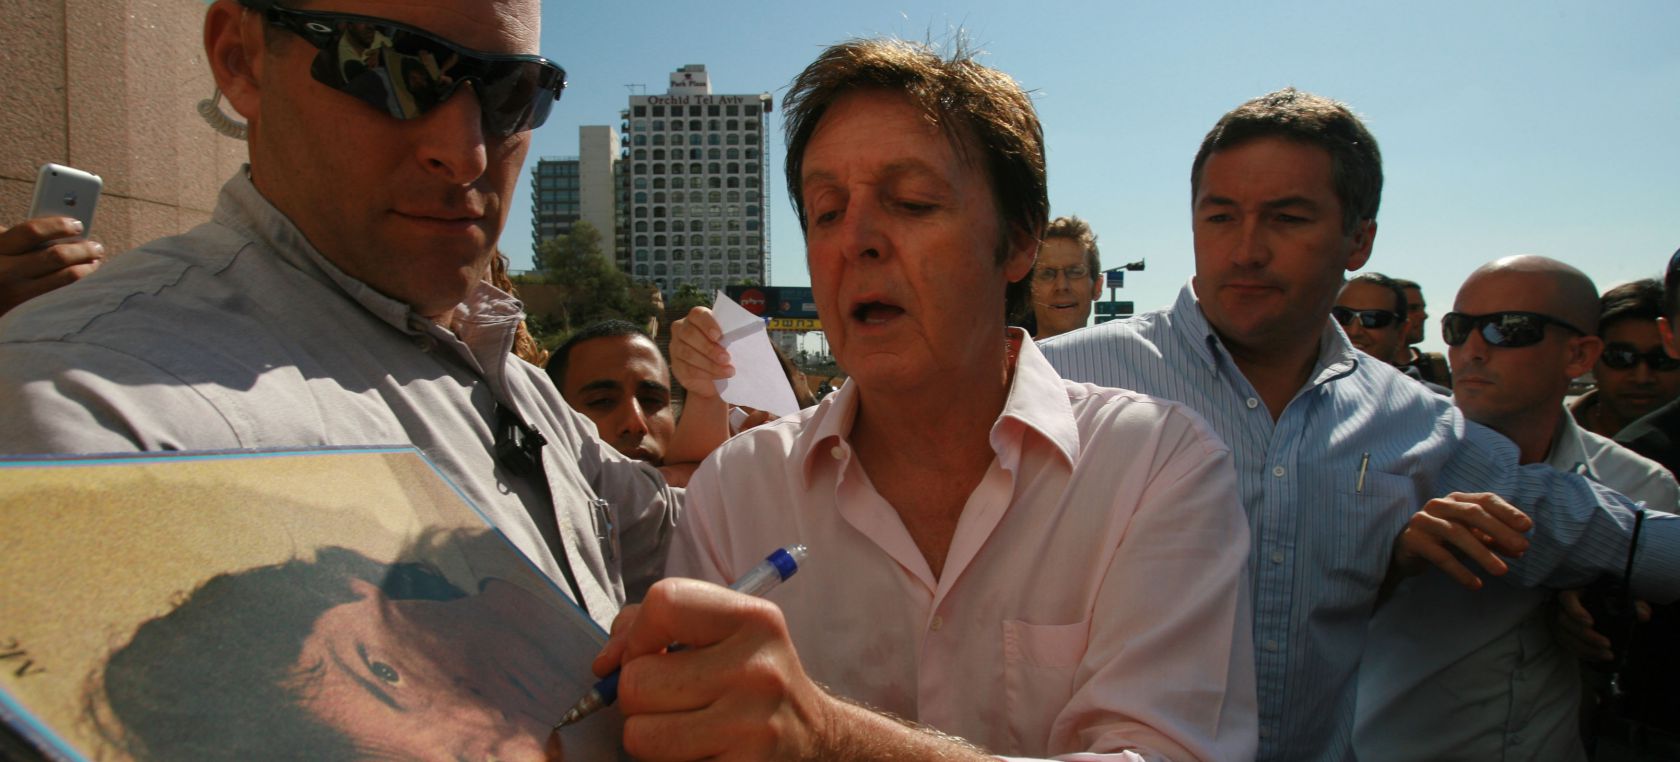 Paul McCartney no firmará más autógrafos a los fans: “Ambos sabemos quién soy”